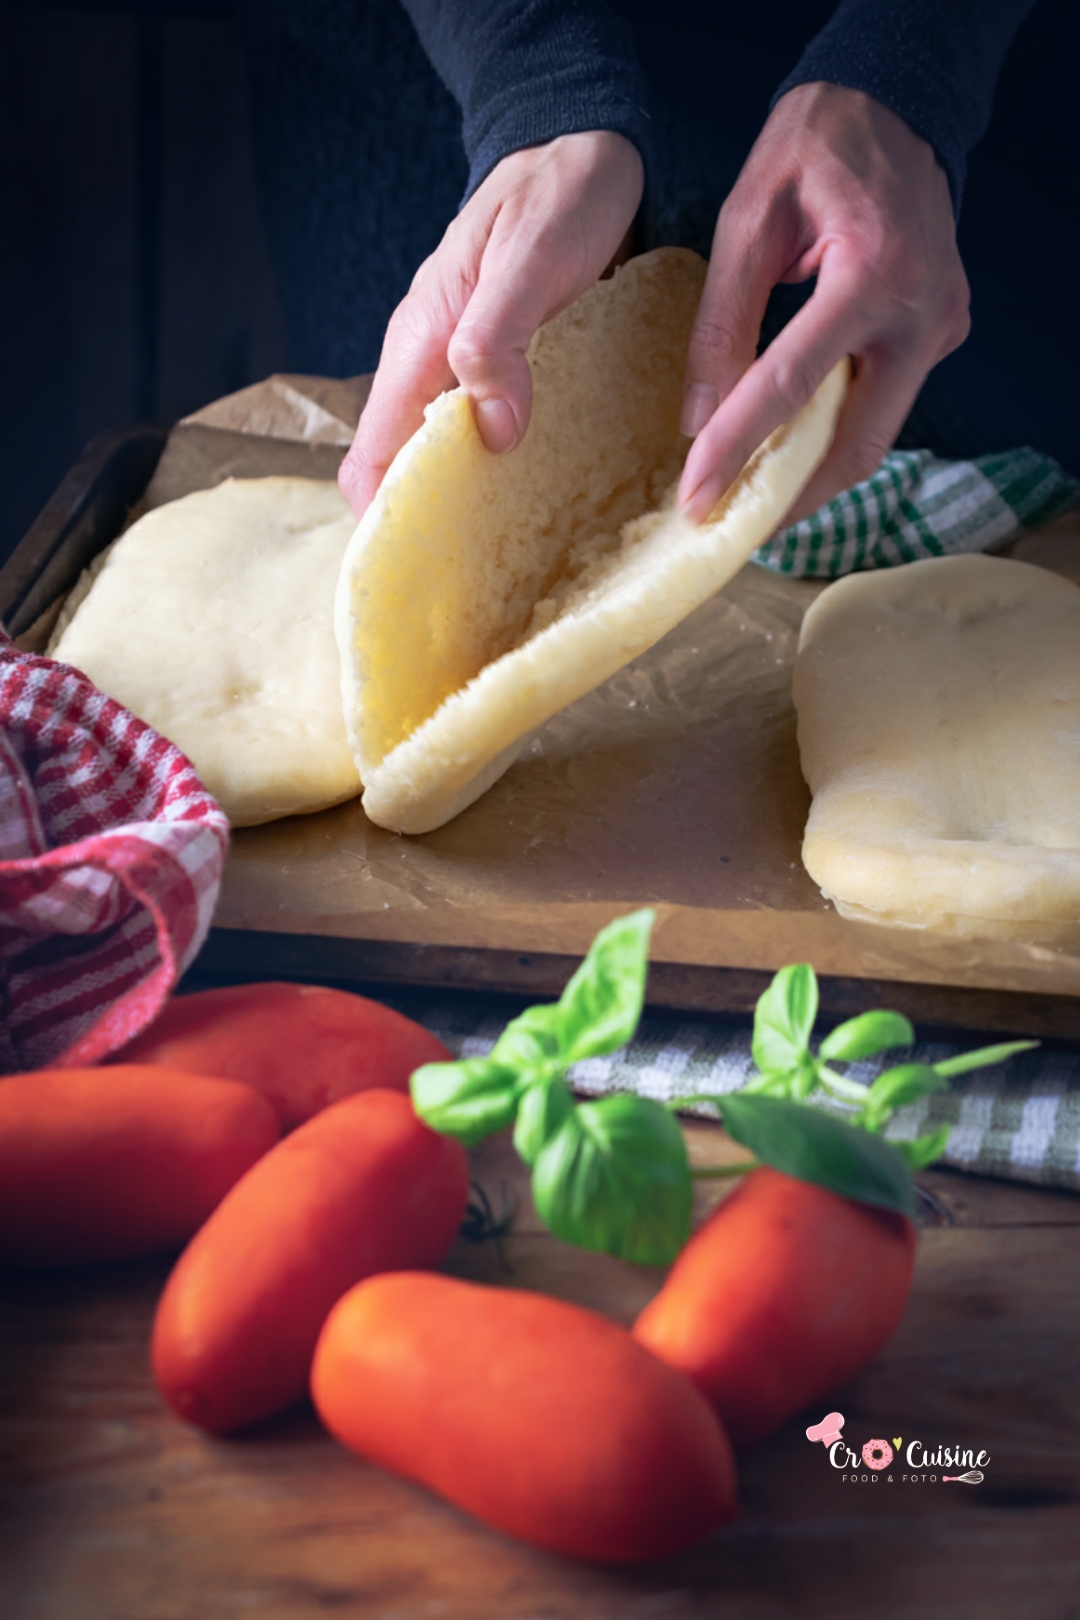 panini délicieux pain maison qui seront la star à votre table pour une soirée italienne de folie.